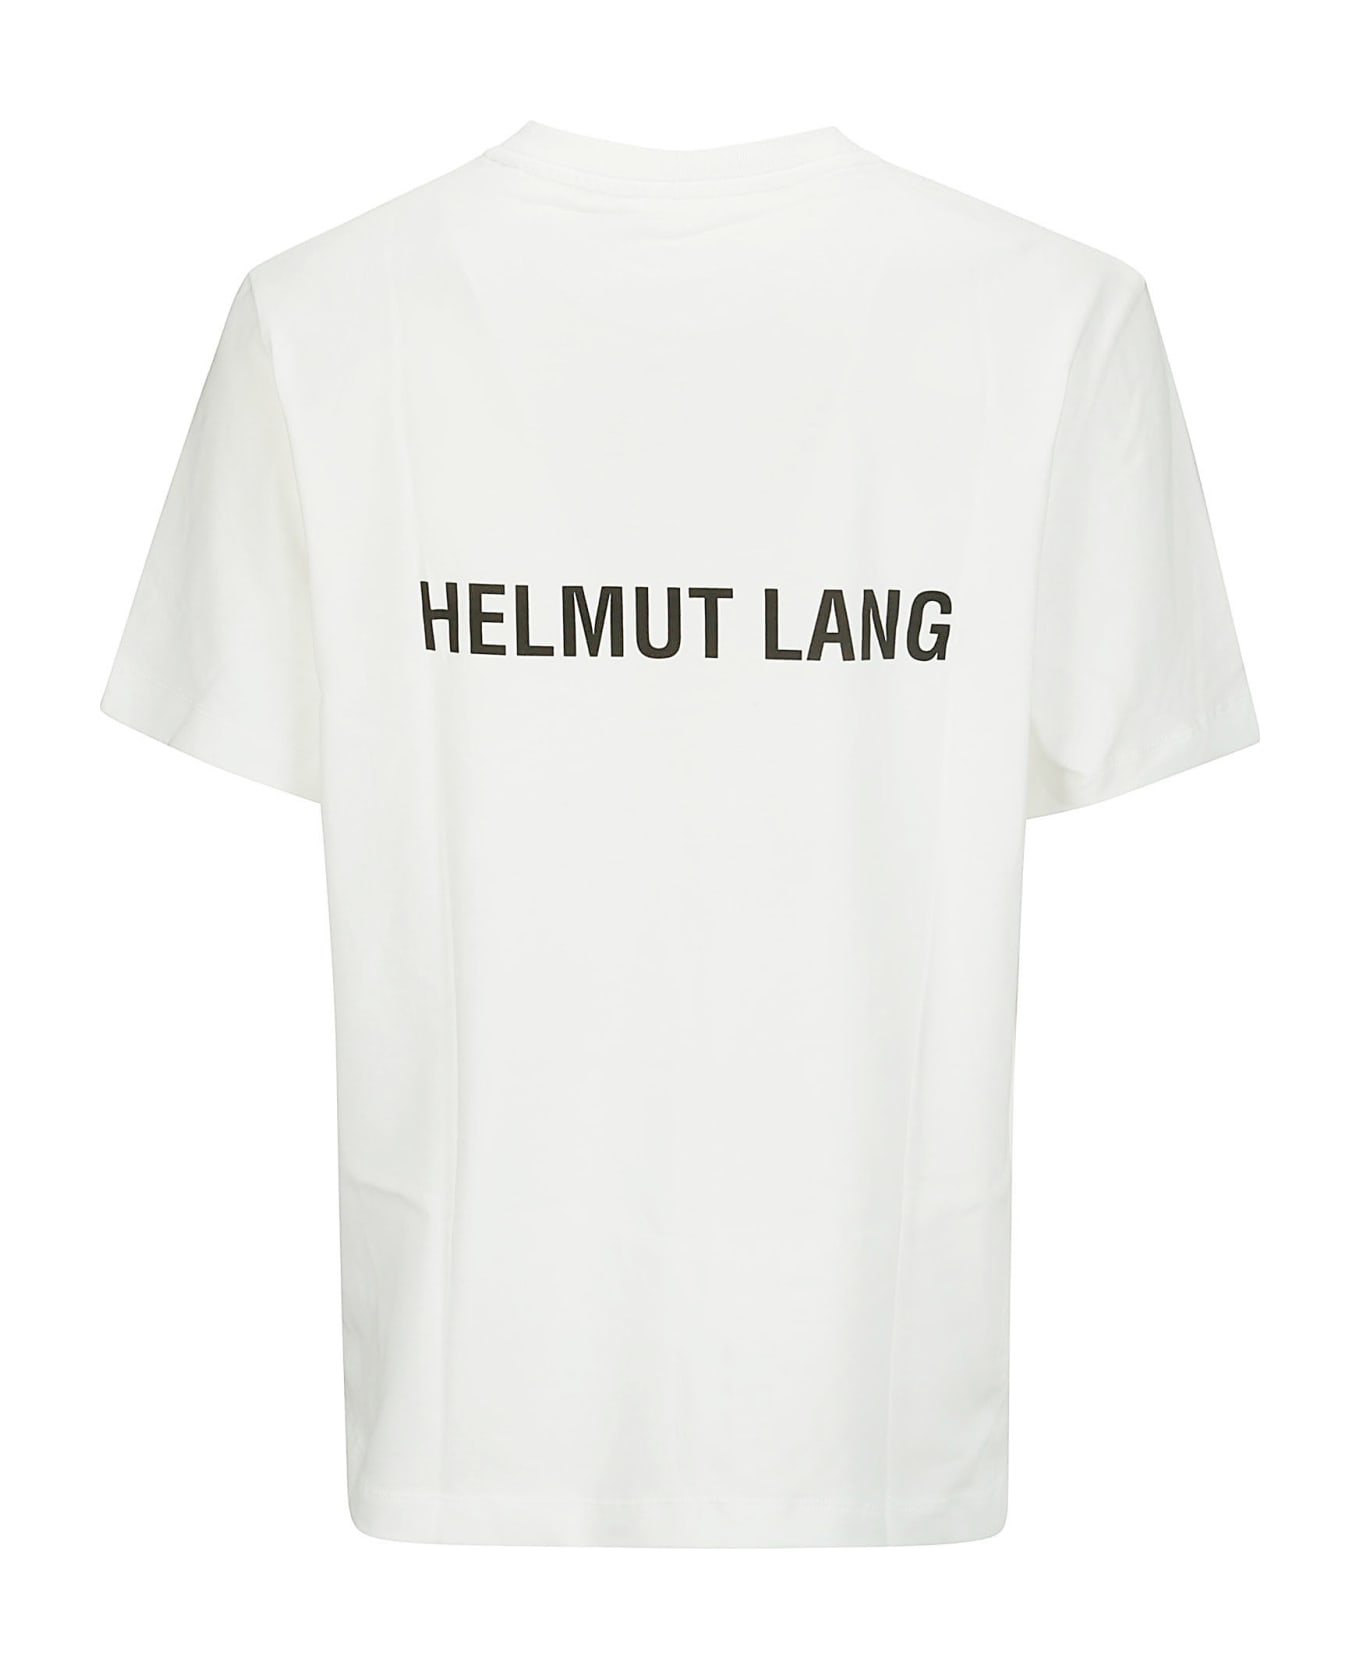 Helmut Lang Logo Tee - WHITE シャツ